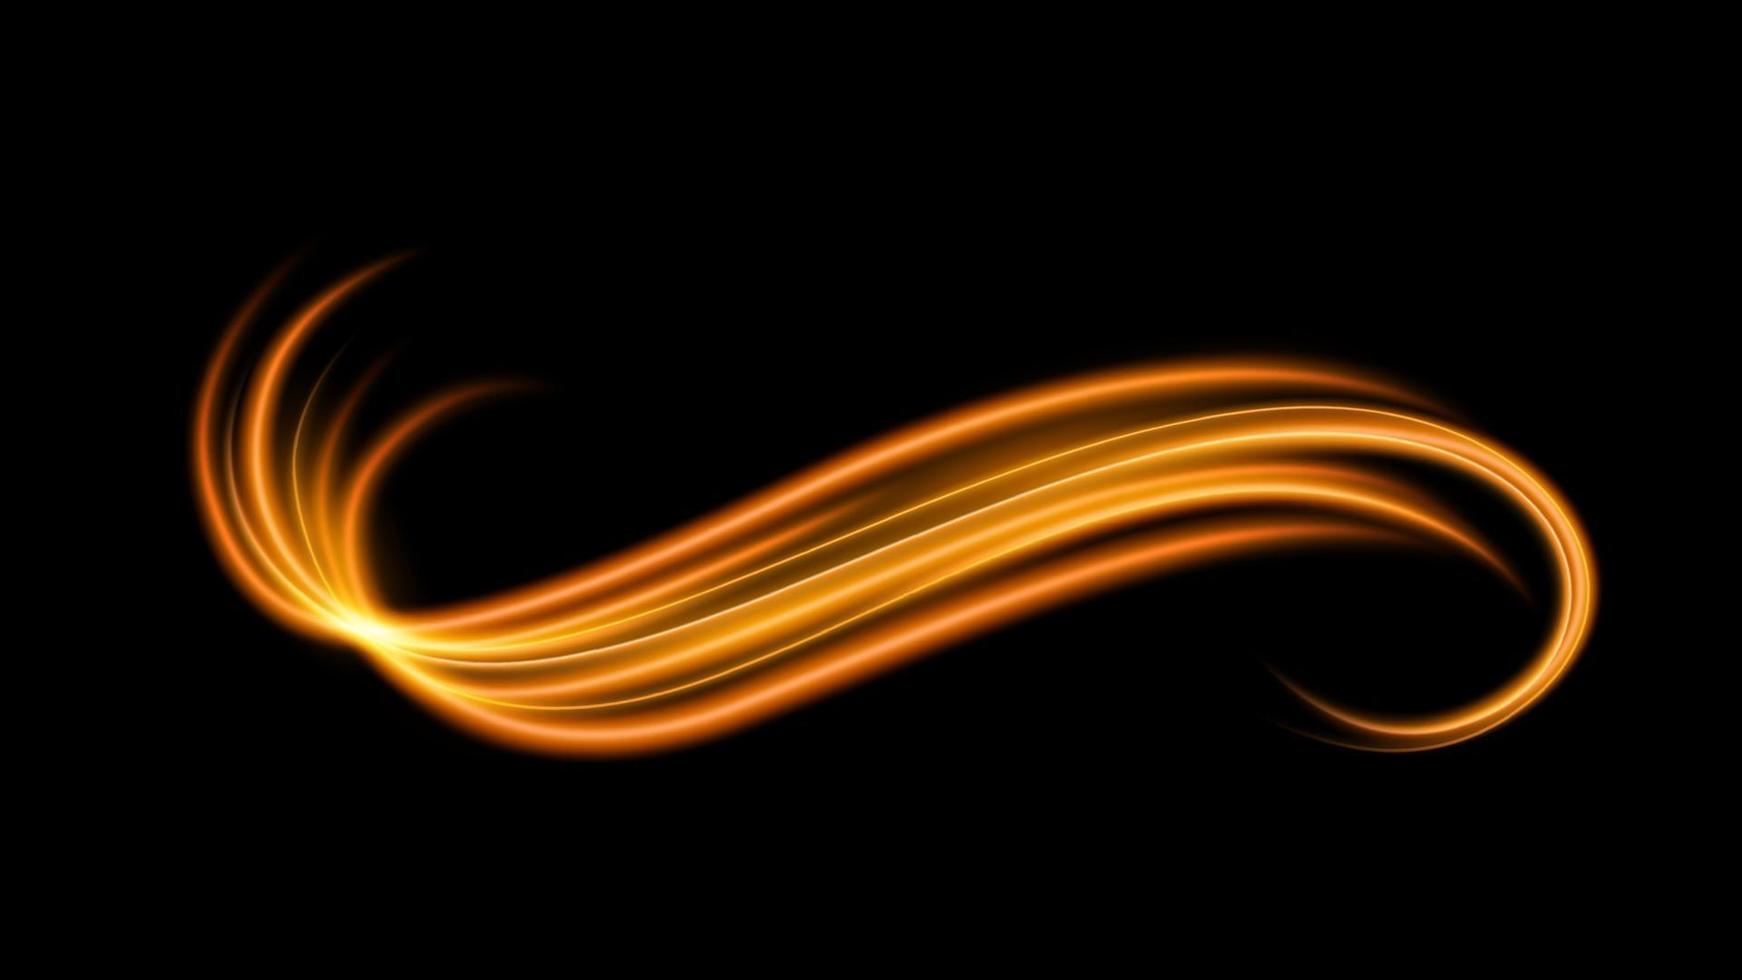 linea di luce ondulata dorata astratta con uno sfondo nero, isolata e facile da modificare. illustrazione vettoriale